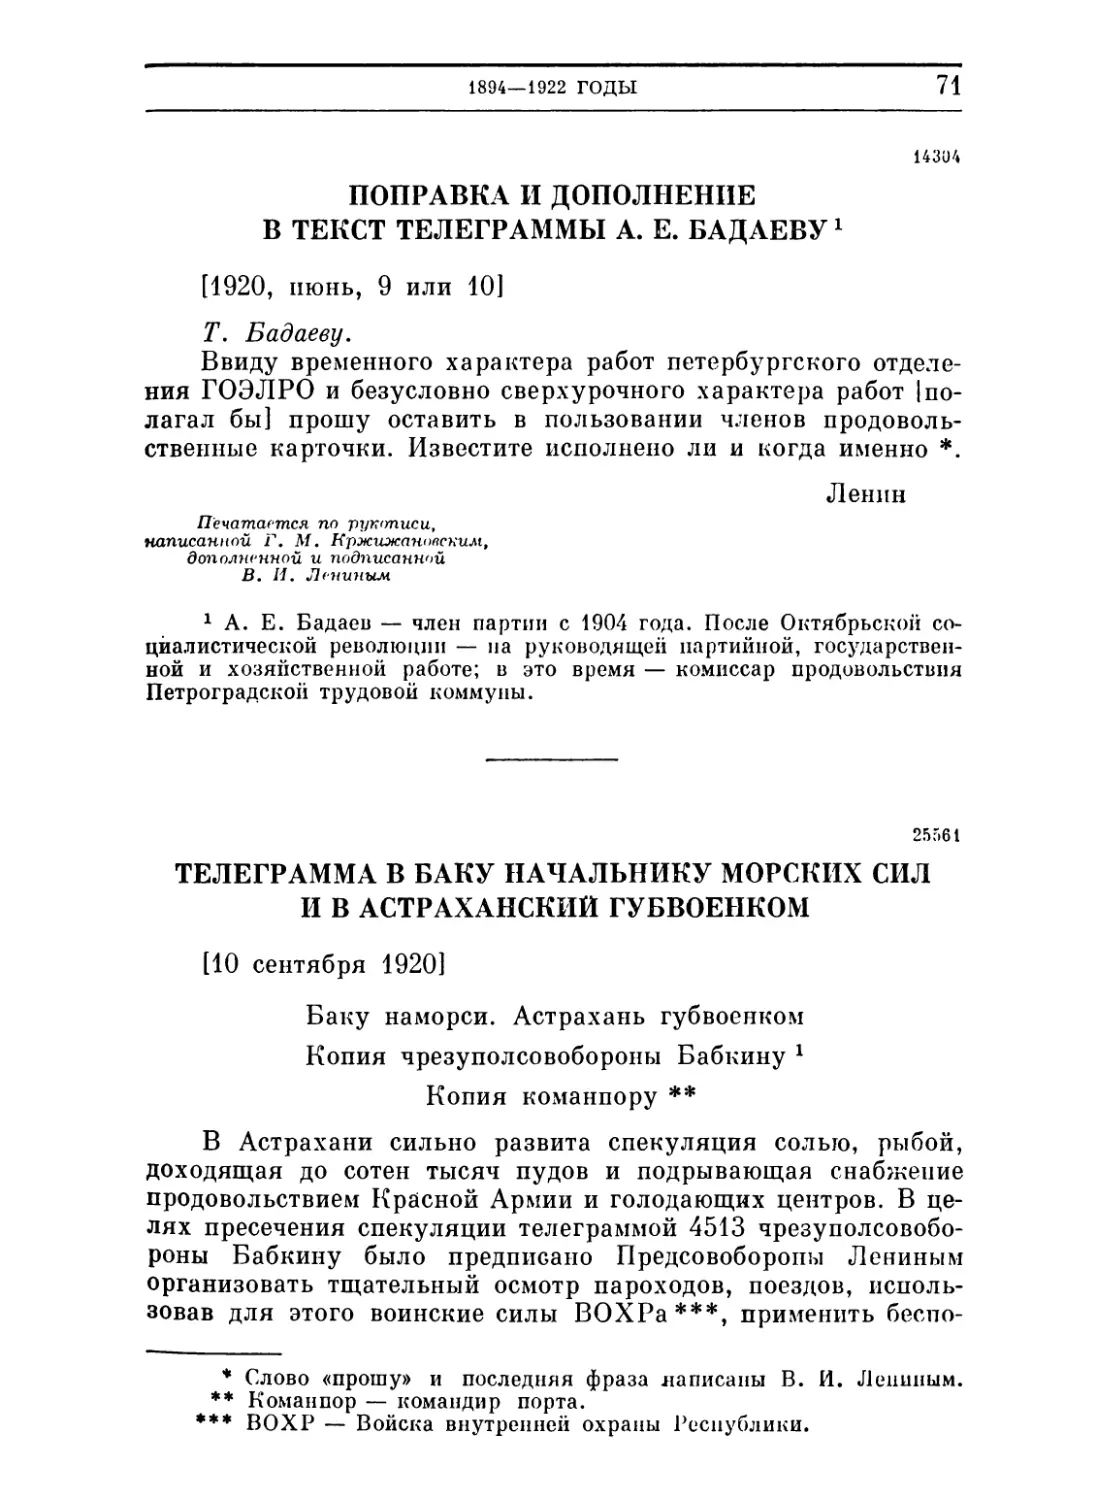 Поправка и дополнение в текст телеграммы А. Е. Бадаеву. 9 или 10 июня 1920
Телеграмма в Баку начальнику морских сил и в Астраханский губвоенком. 10 сентября 1920